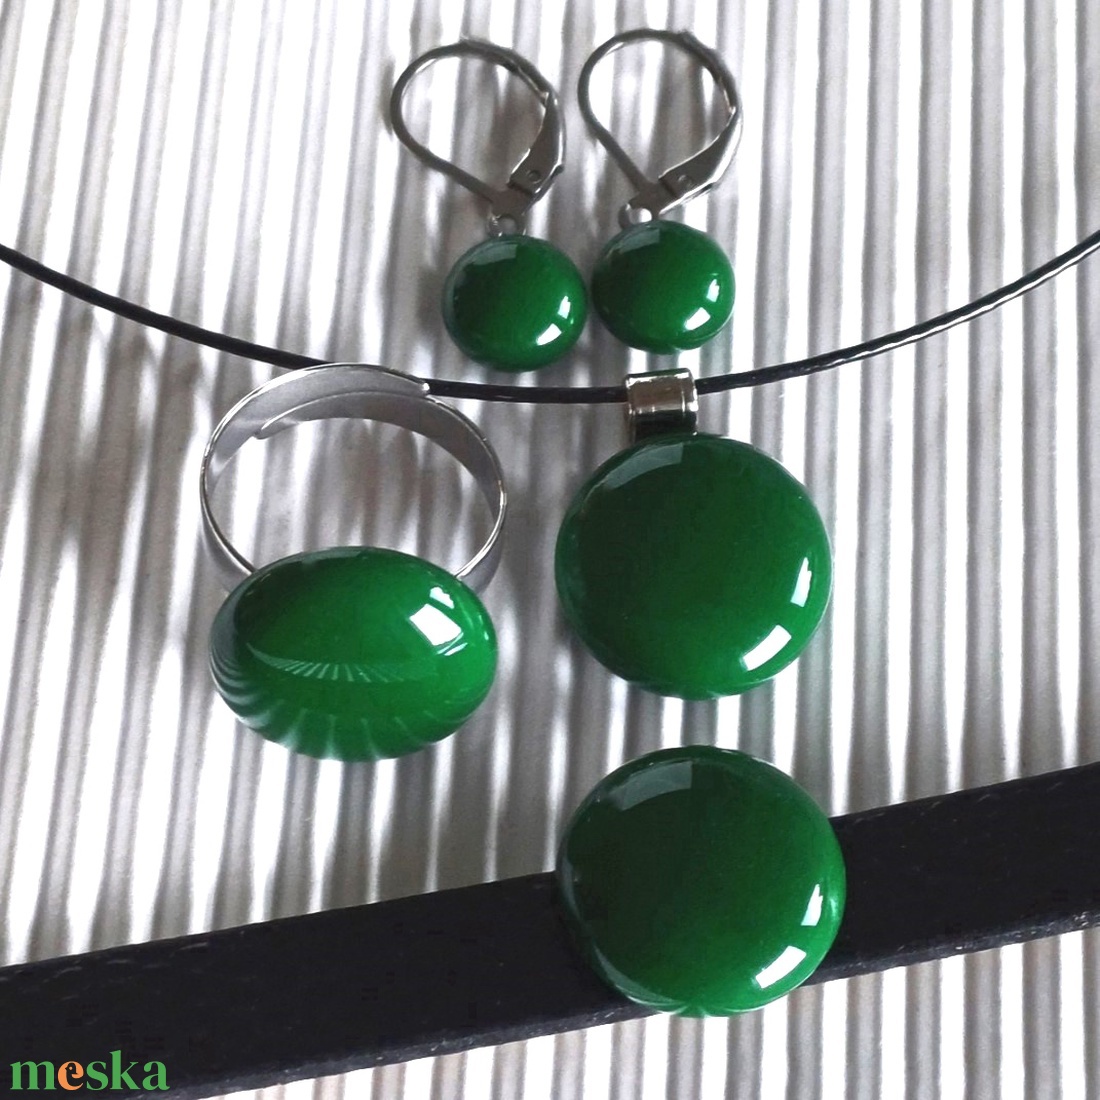 NEMESACÉL - Smaragd pötty üveg gyűrű, üvegékszer - ékszer - gyűrű - statement gyűrű - Meska.hu